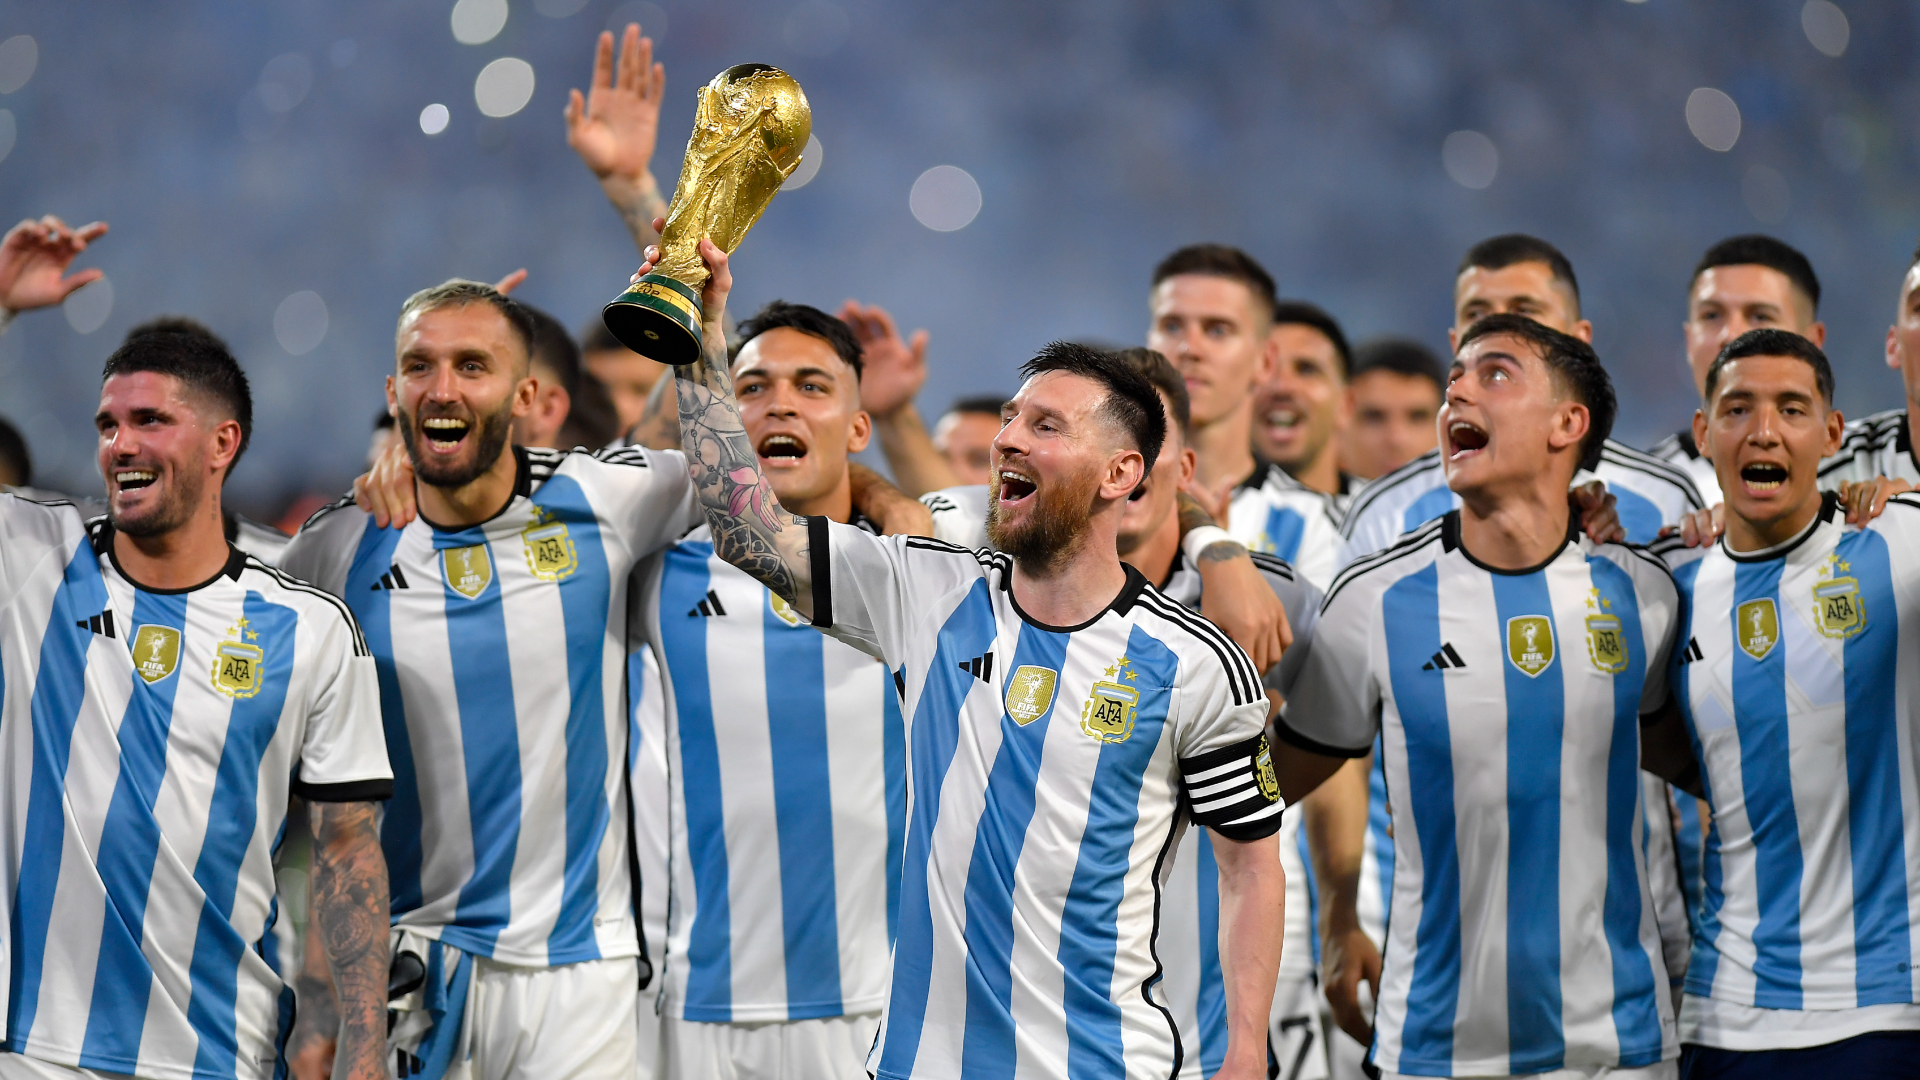 Poyet: Uruguay must host centenary World Cup